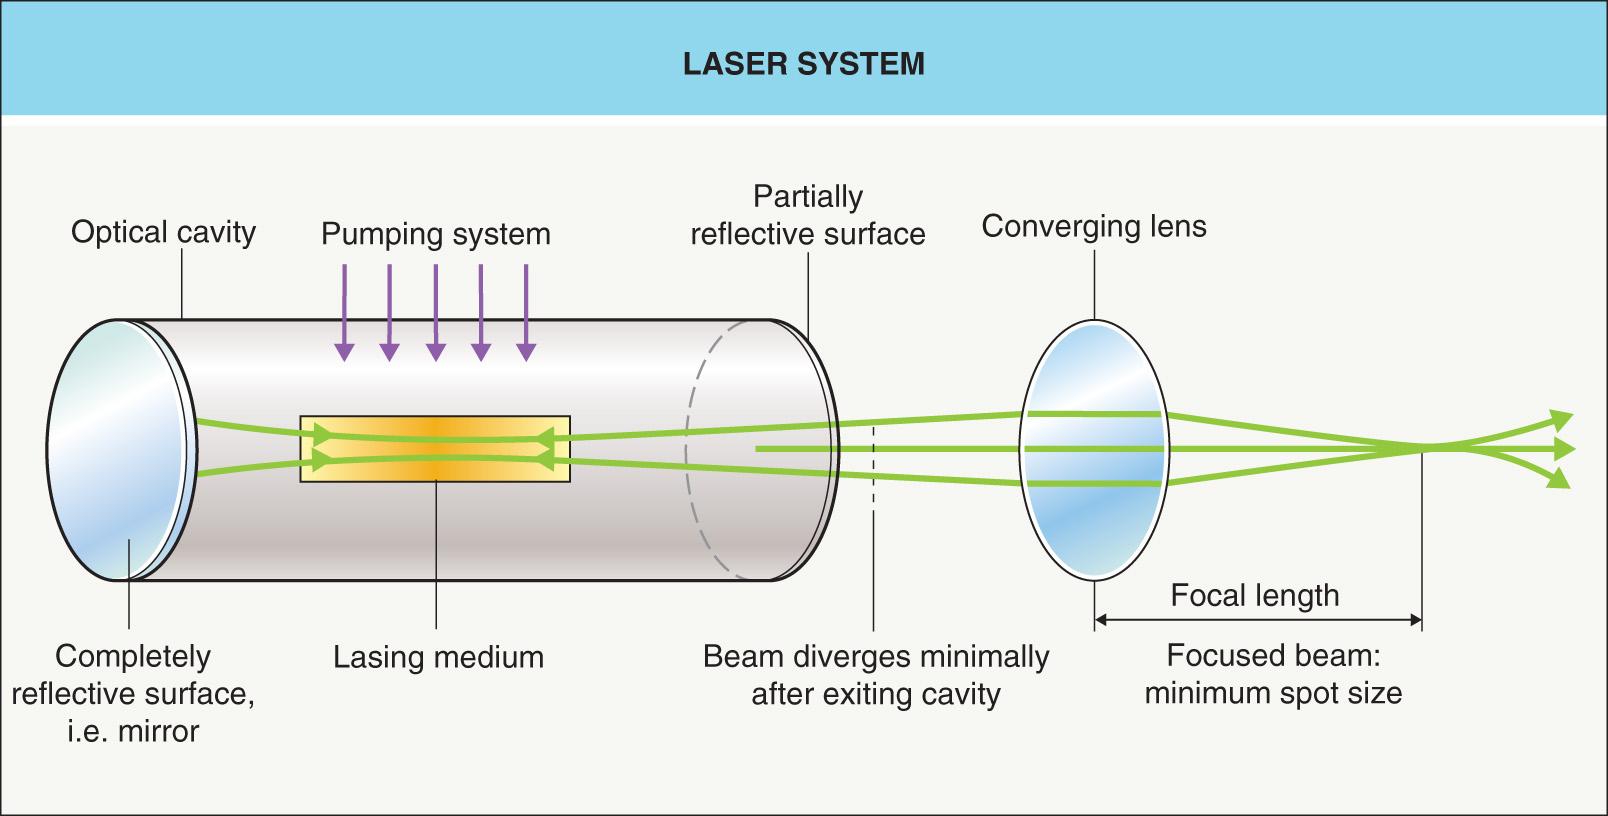 Fig. 136.1, Laser system.